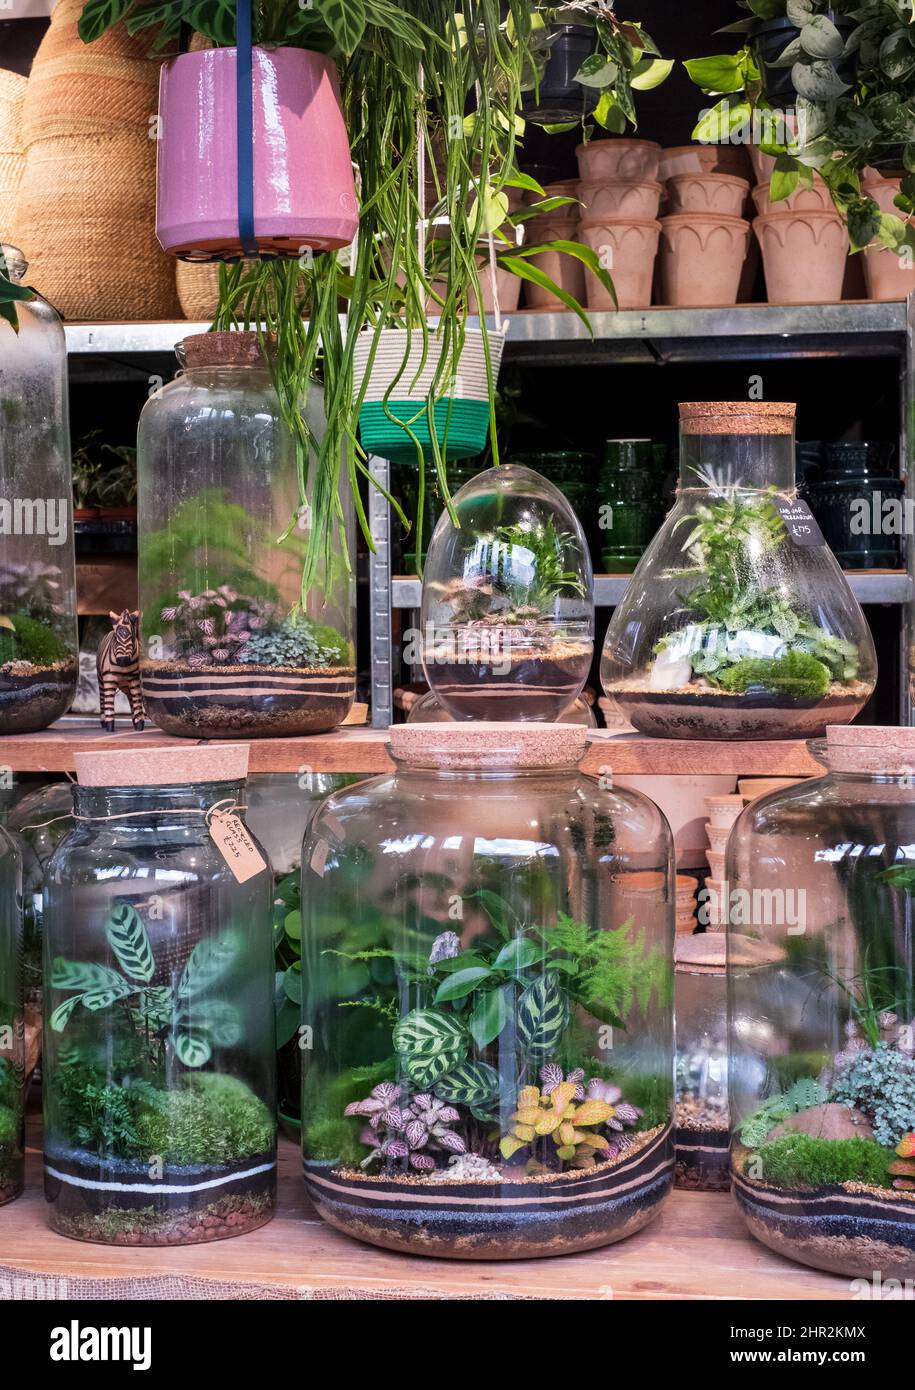 Terrarium in vendita in un negozio di fiori a Londra Regno Unito